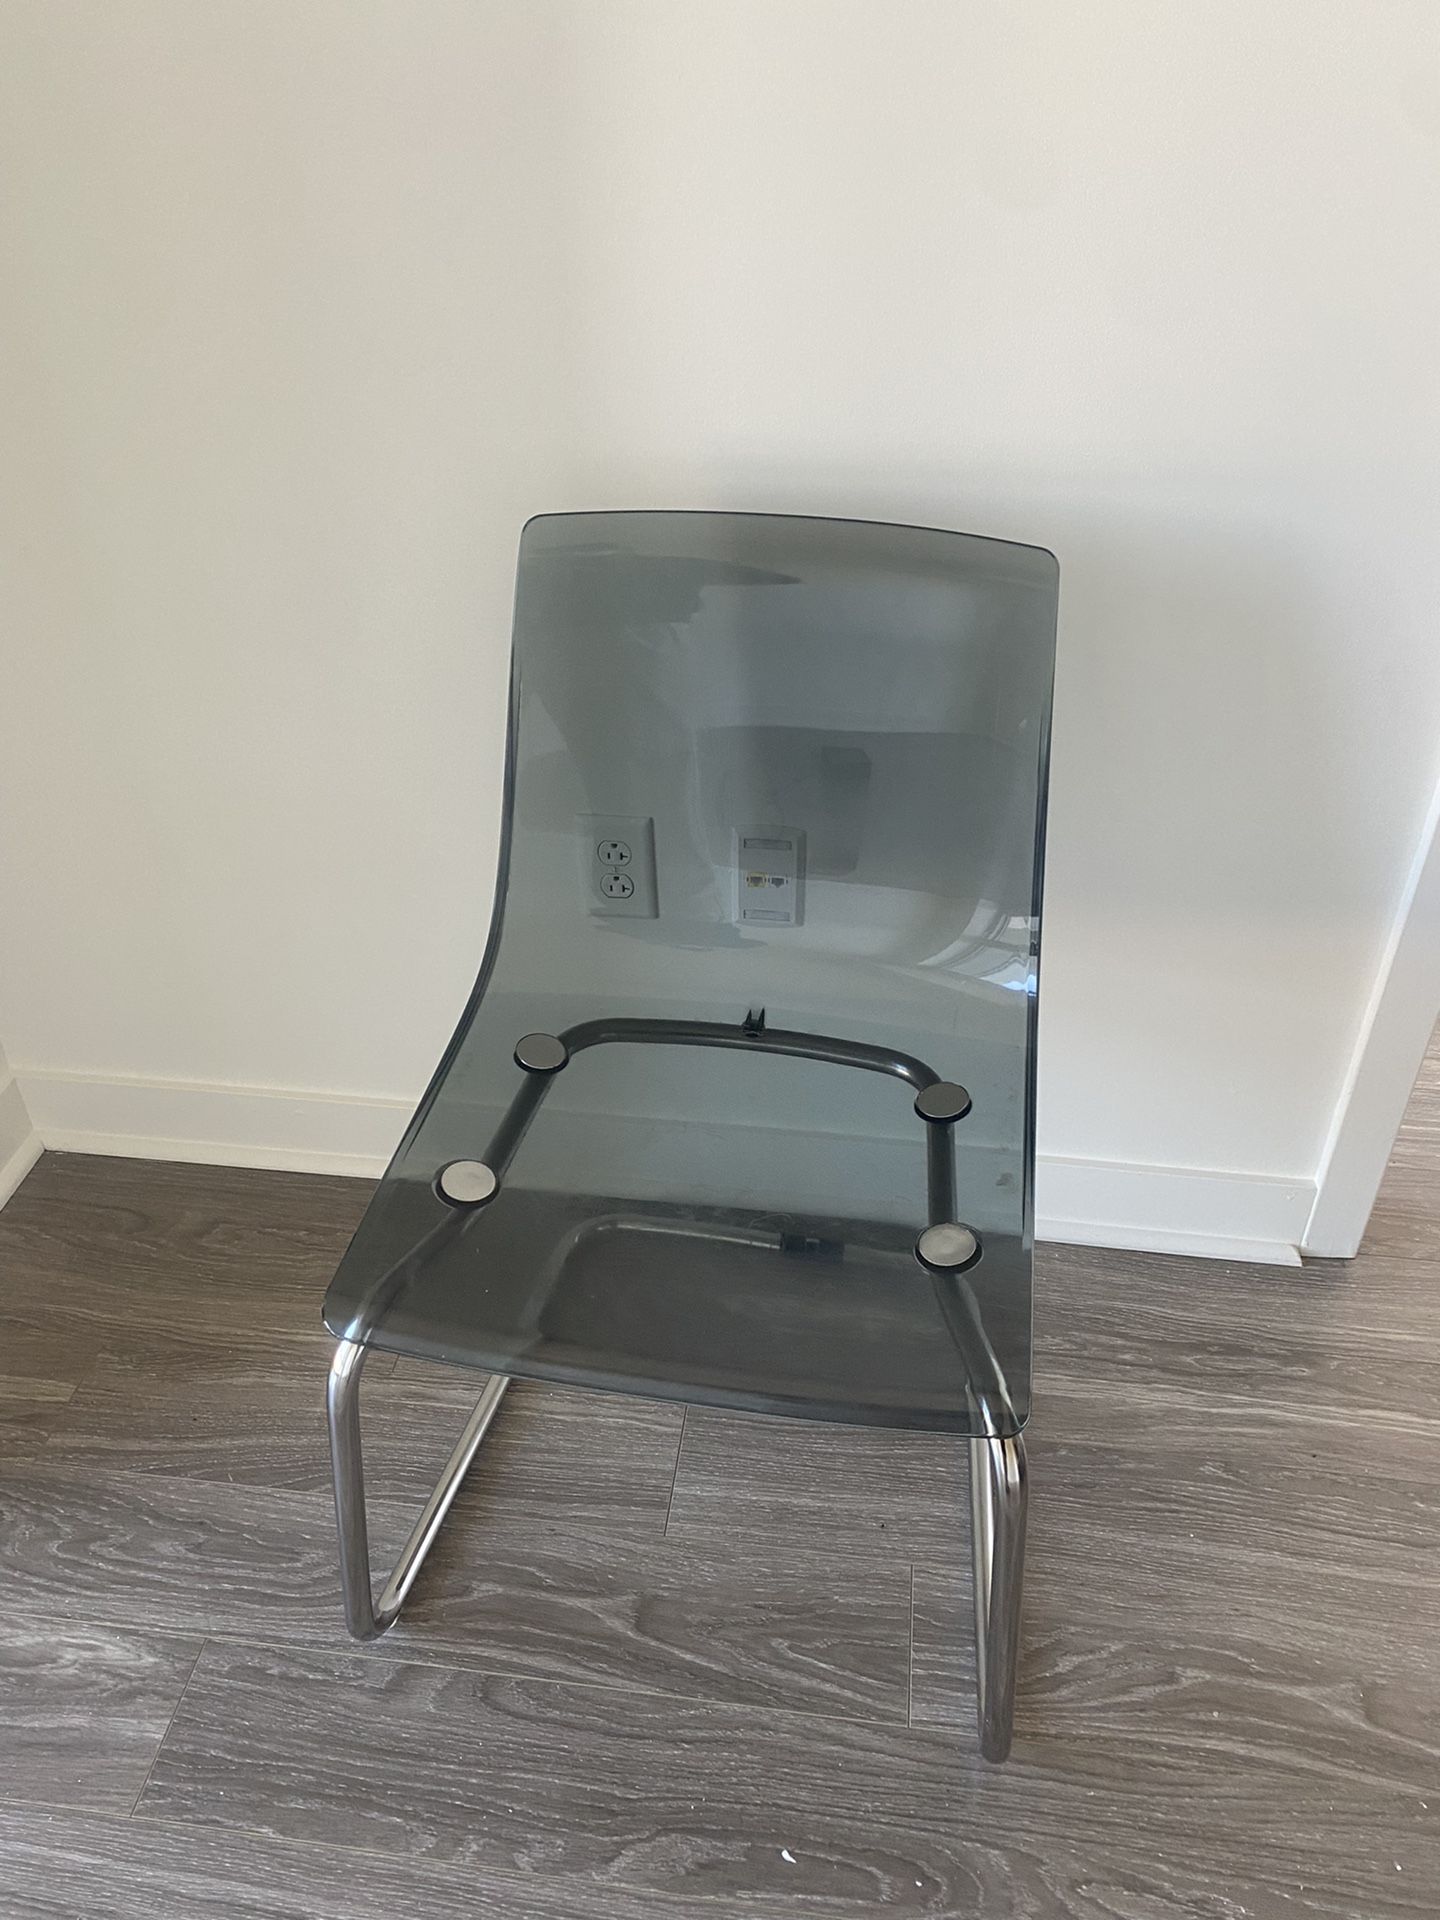 Chair $20